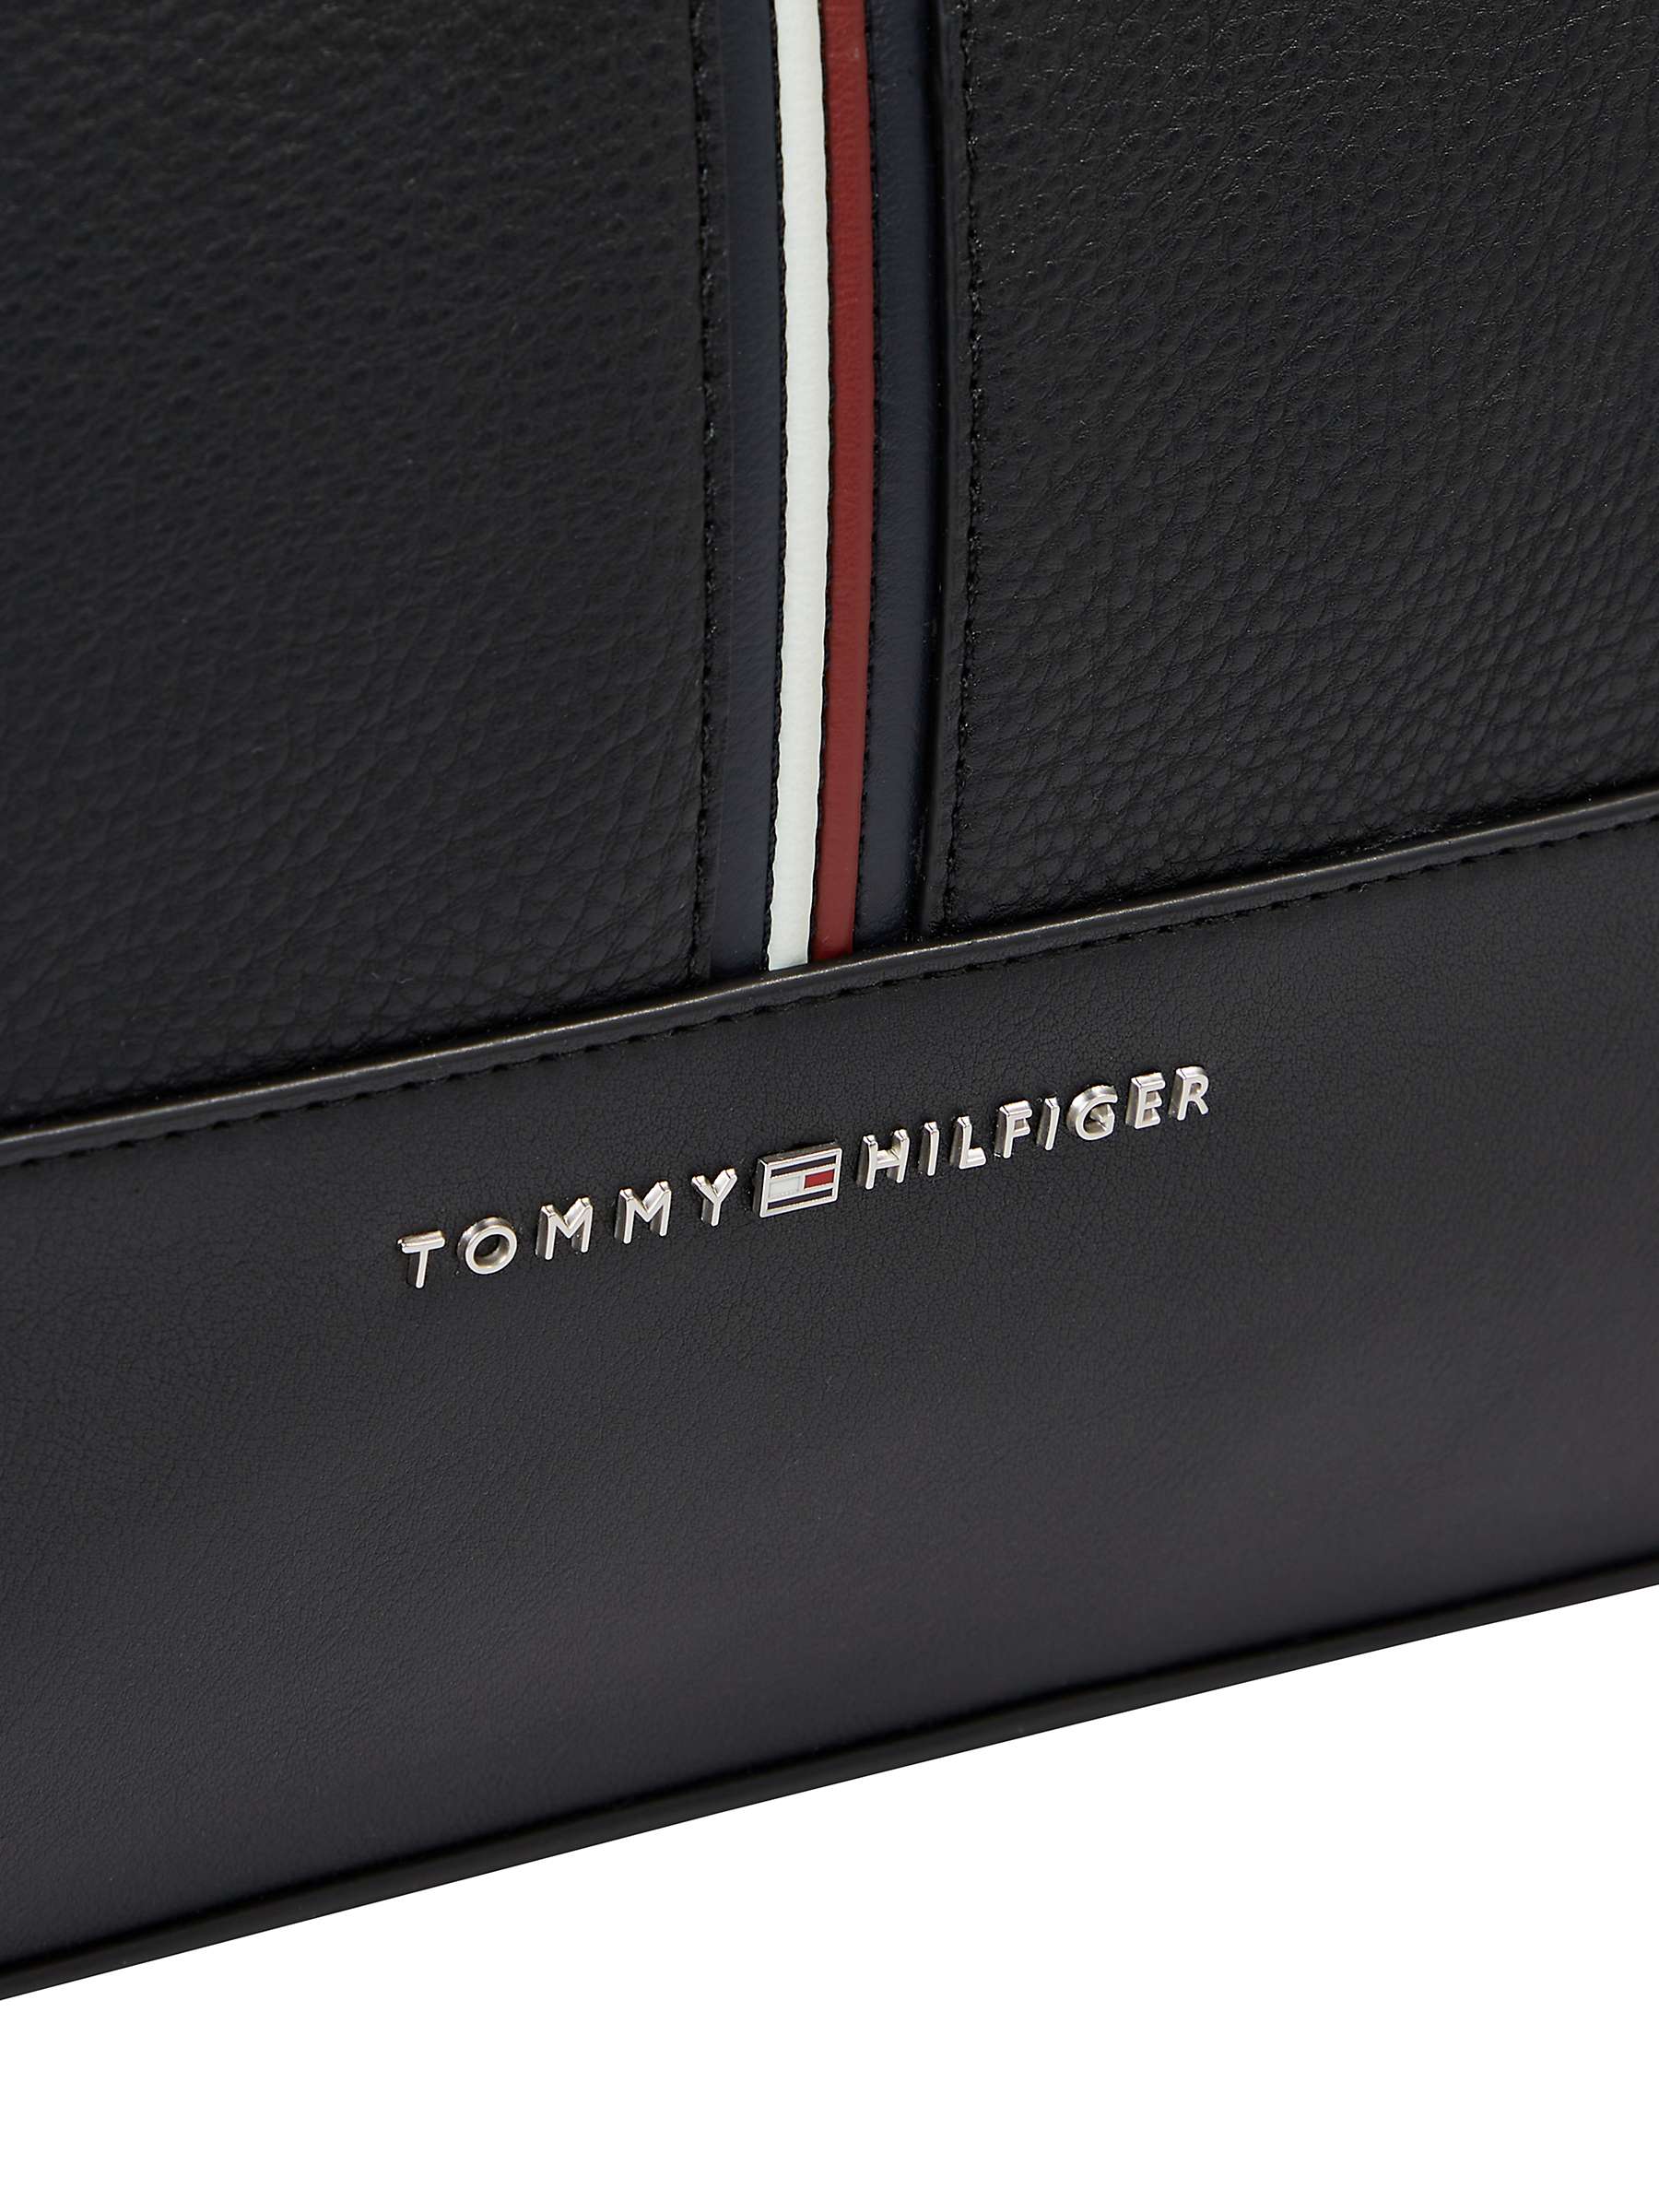 Buy Tommy Hilfiger Duffle Bag, Black Online at johnlewis.com